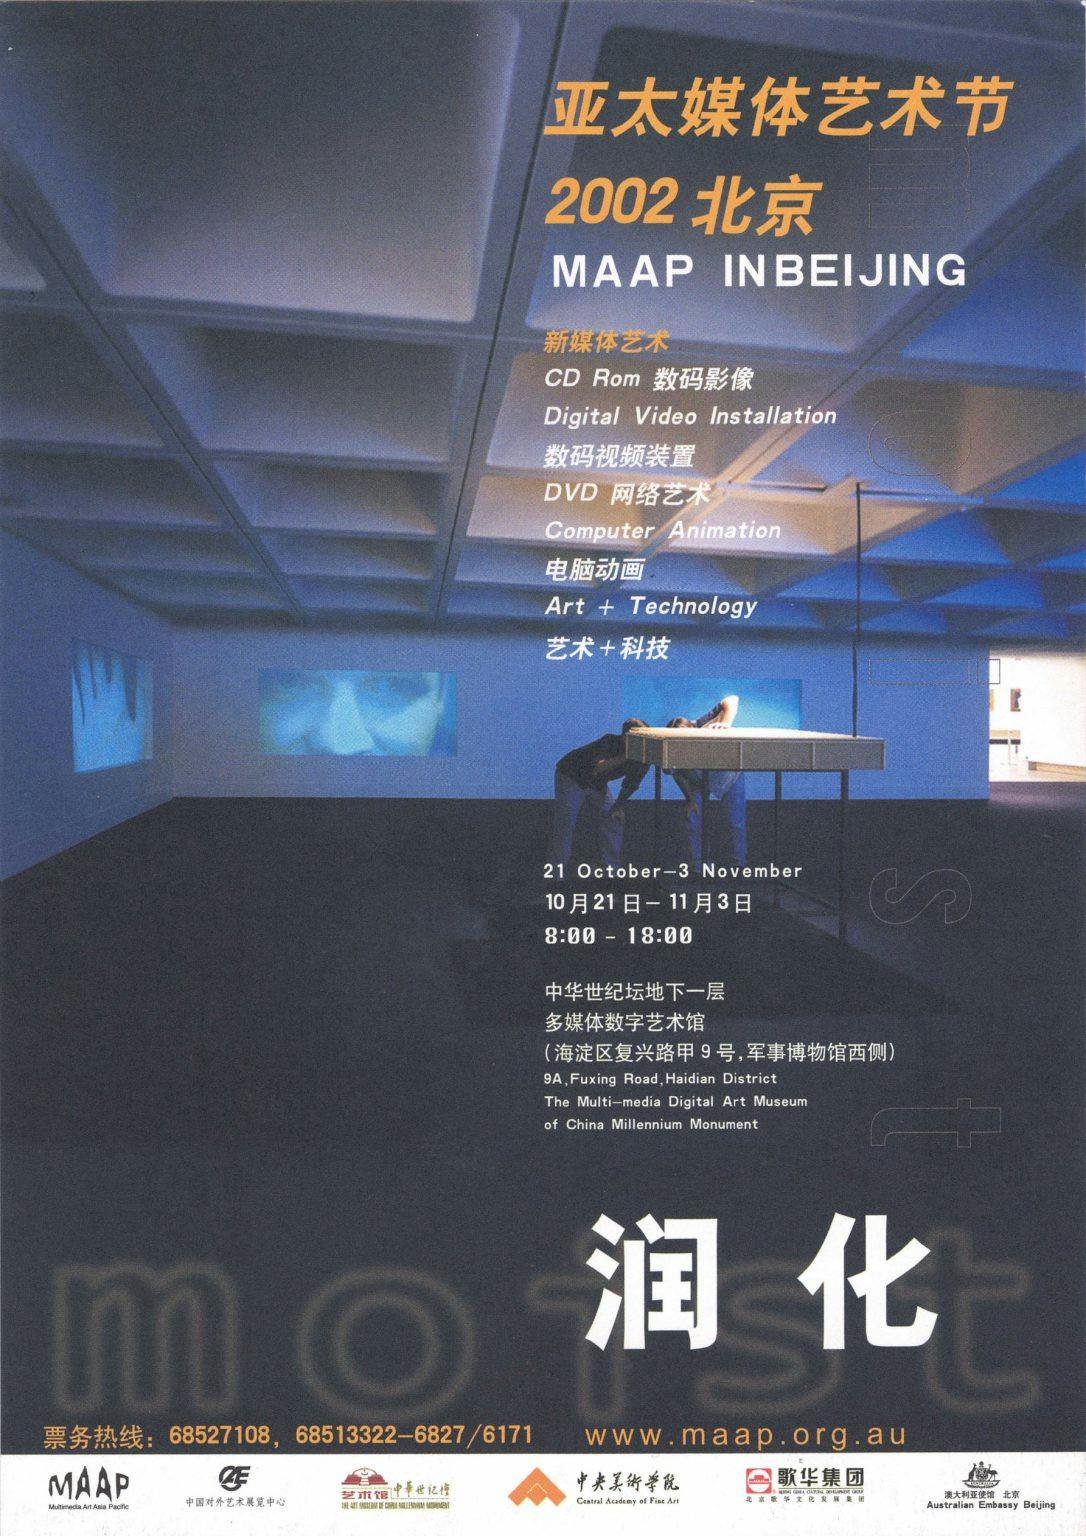 MAAP IN BEIJING 2002 亞太媒體藝術節 2002 北京